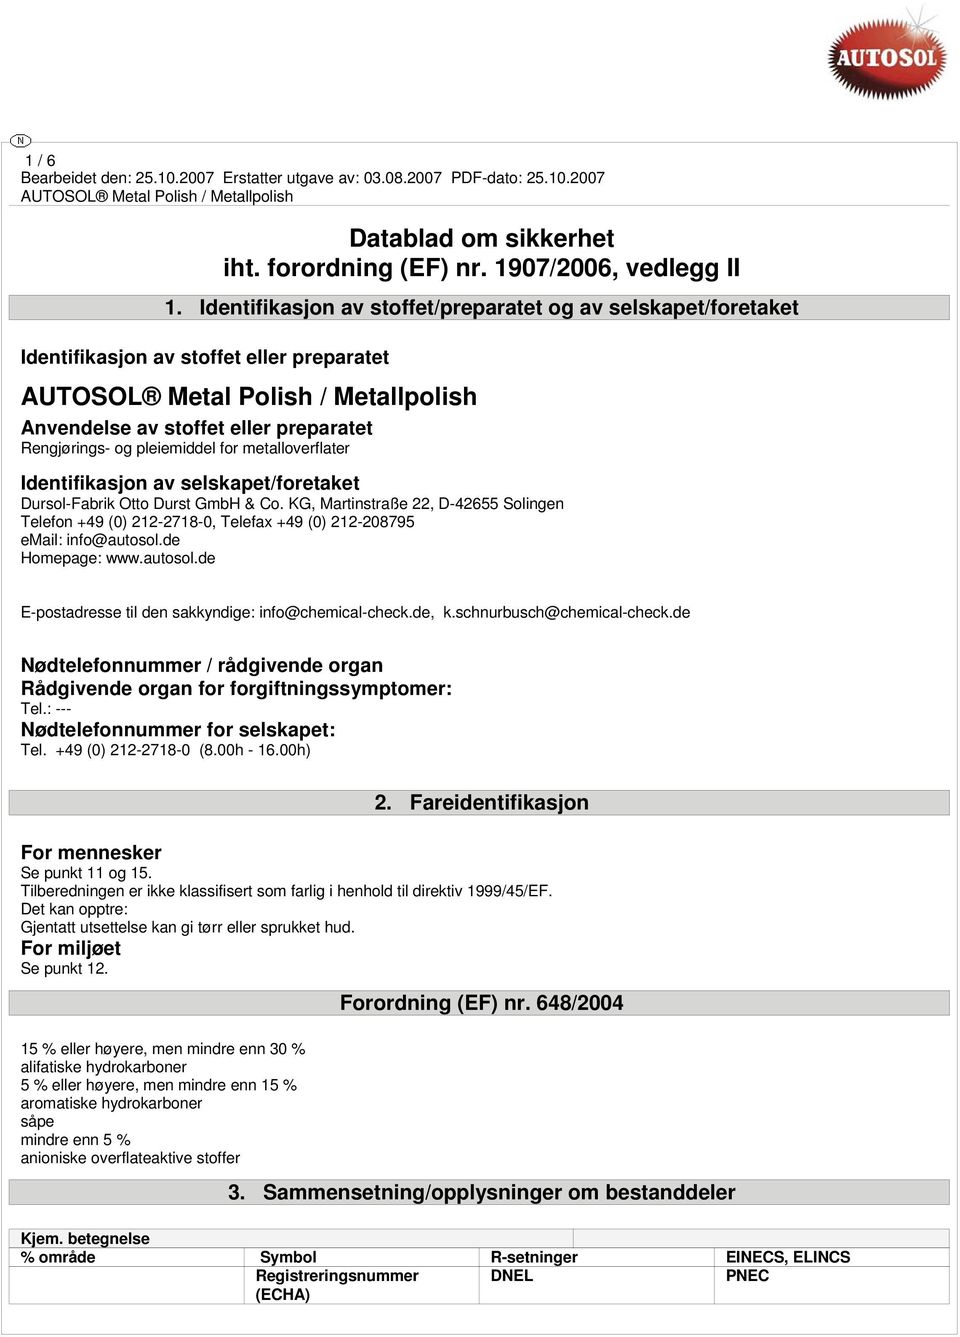 Identifikasjon av selskapet/foretaket Dursol-Fabrik Otto Durst GmbH & Co. KG, Martinstraße 22, D-42655 Solingen Telefon +49 (0) 212-2718-0, Telefax +49 (0) 212-208795 email: info@autosol.